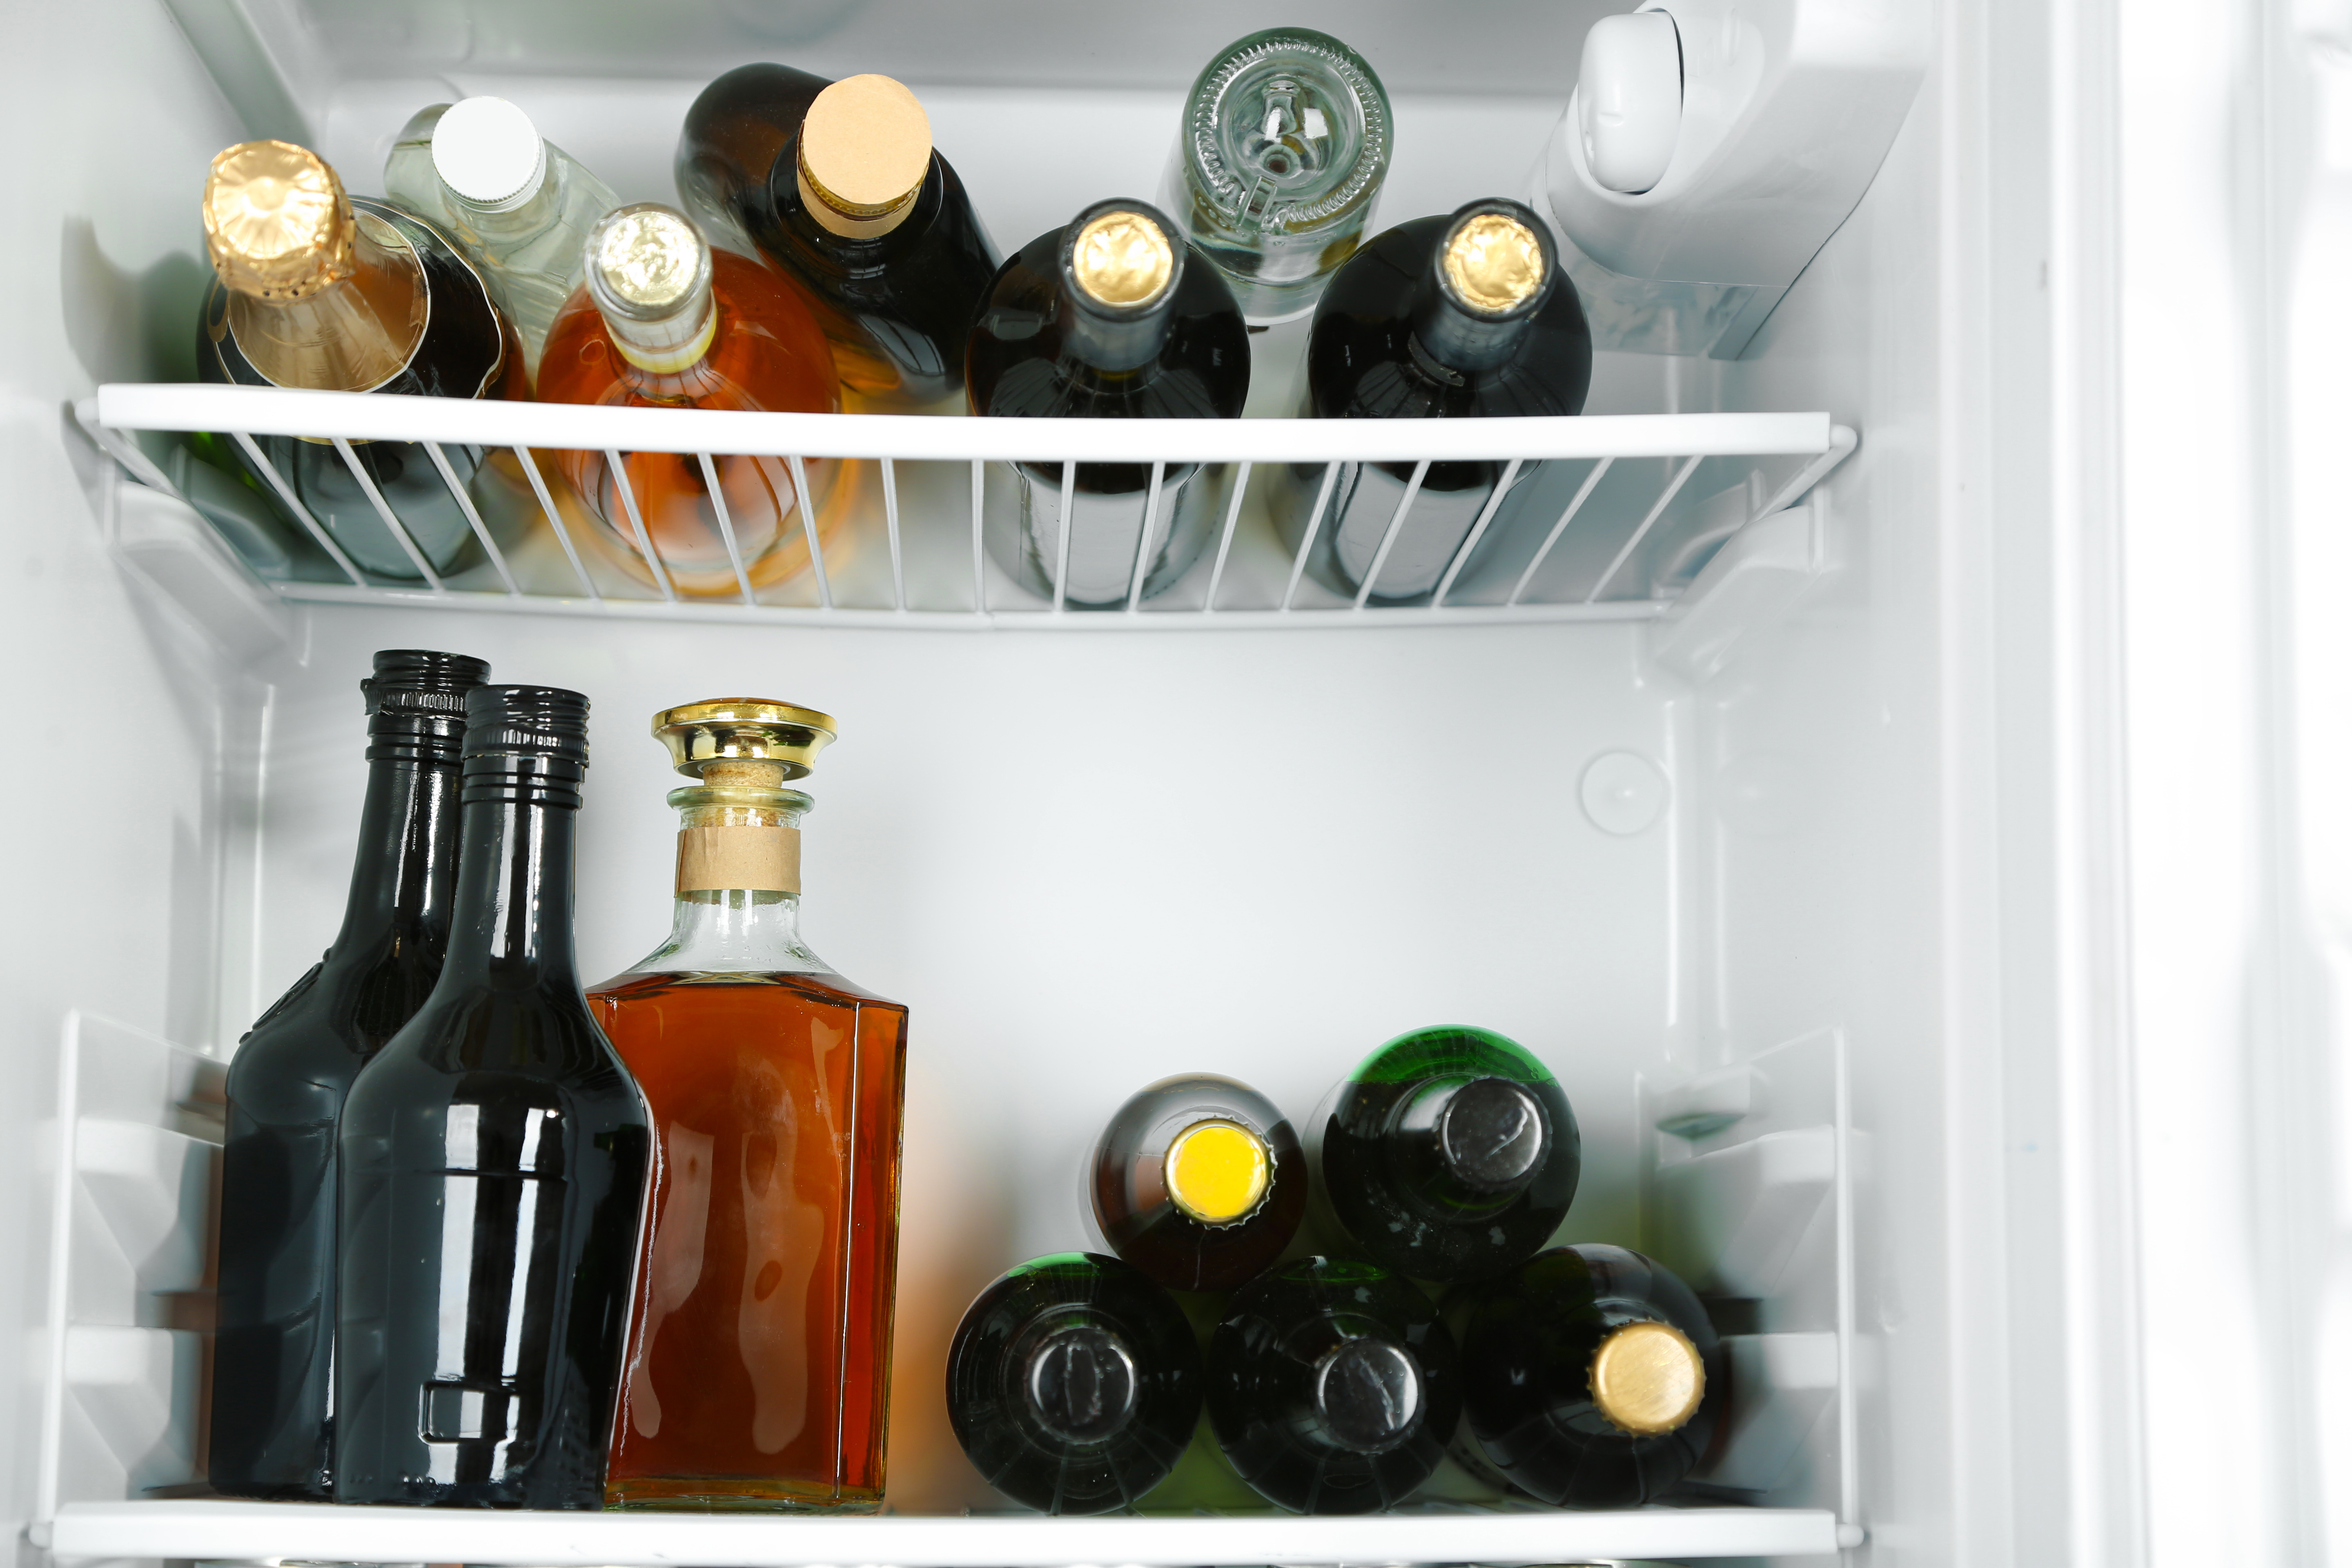 Eindig benzine schade Welke alcoholische dranken bewaar je best in de koelkast?